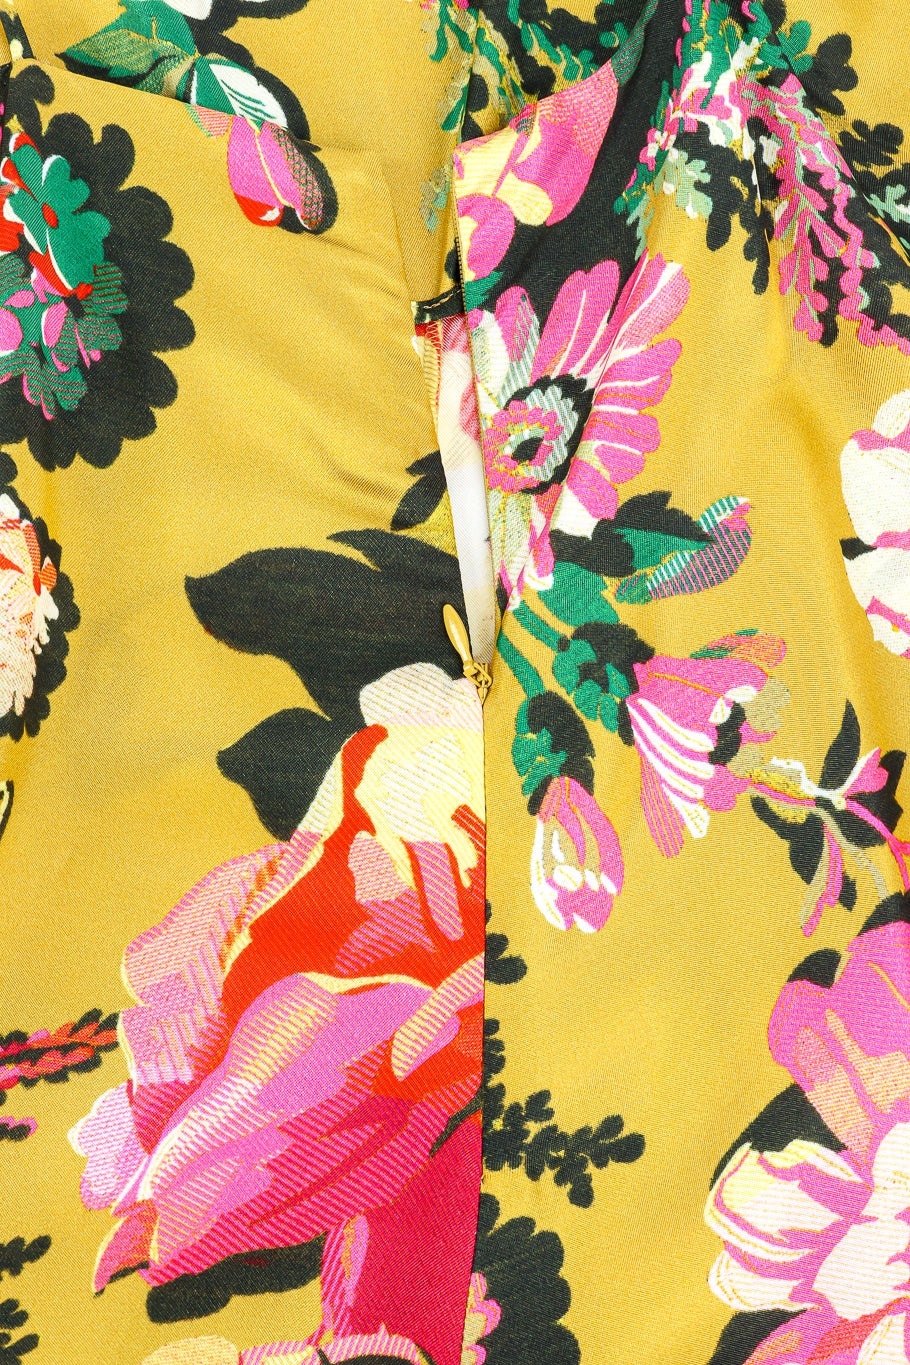 Floral ruffle hem sundress by Dries Van Noten zipper close @recessla